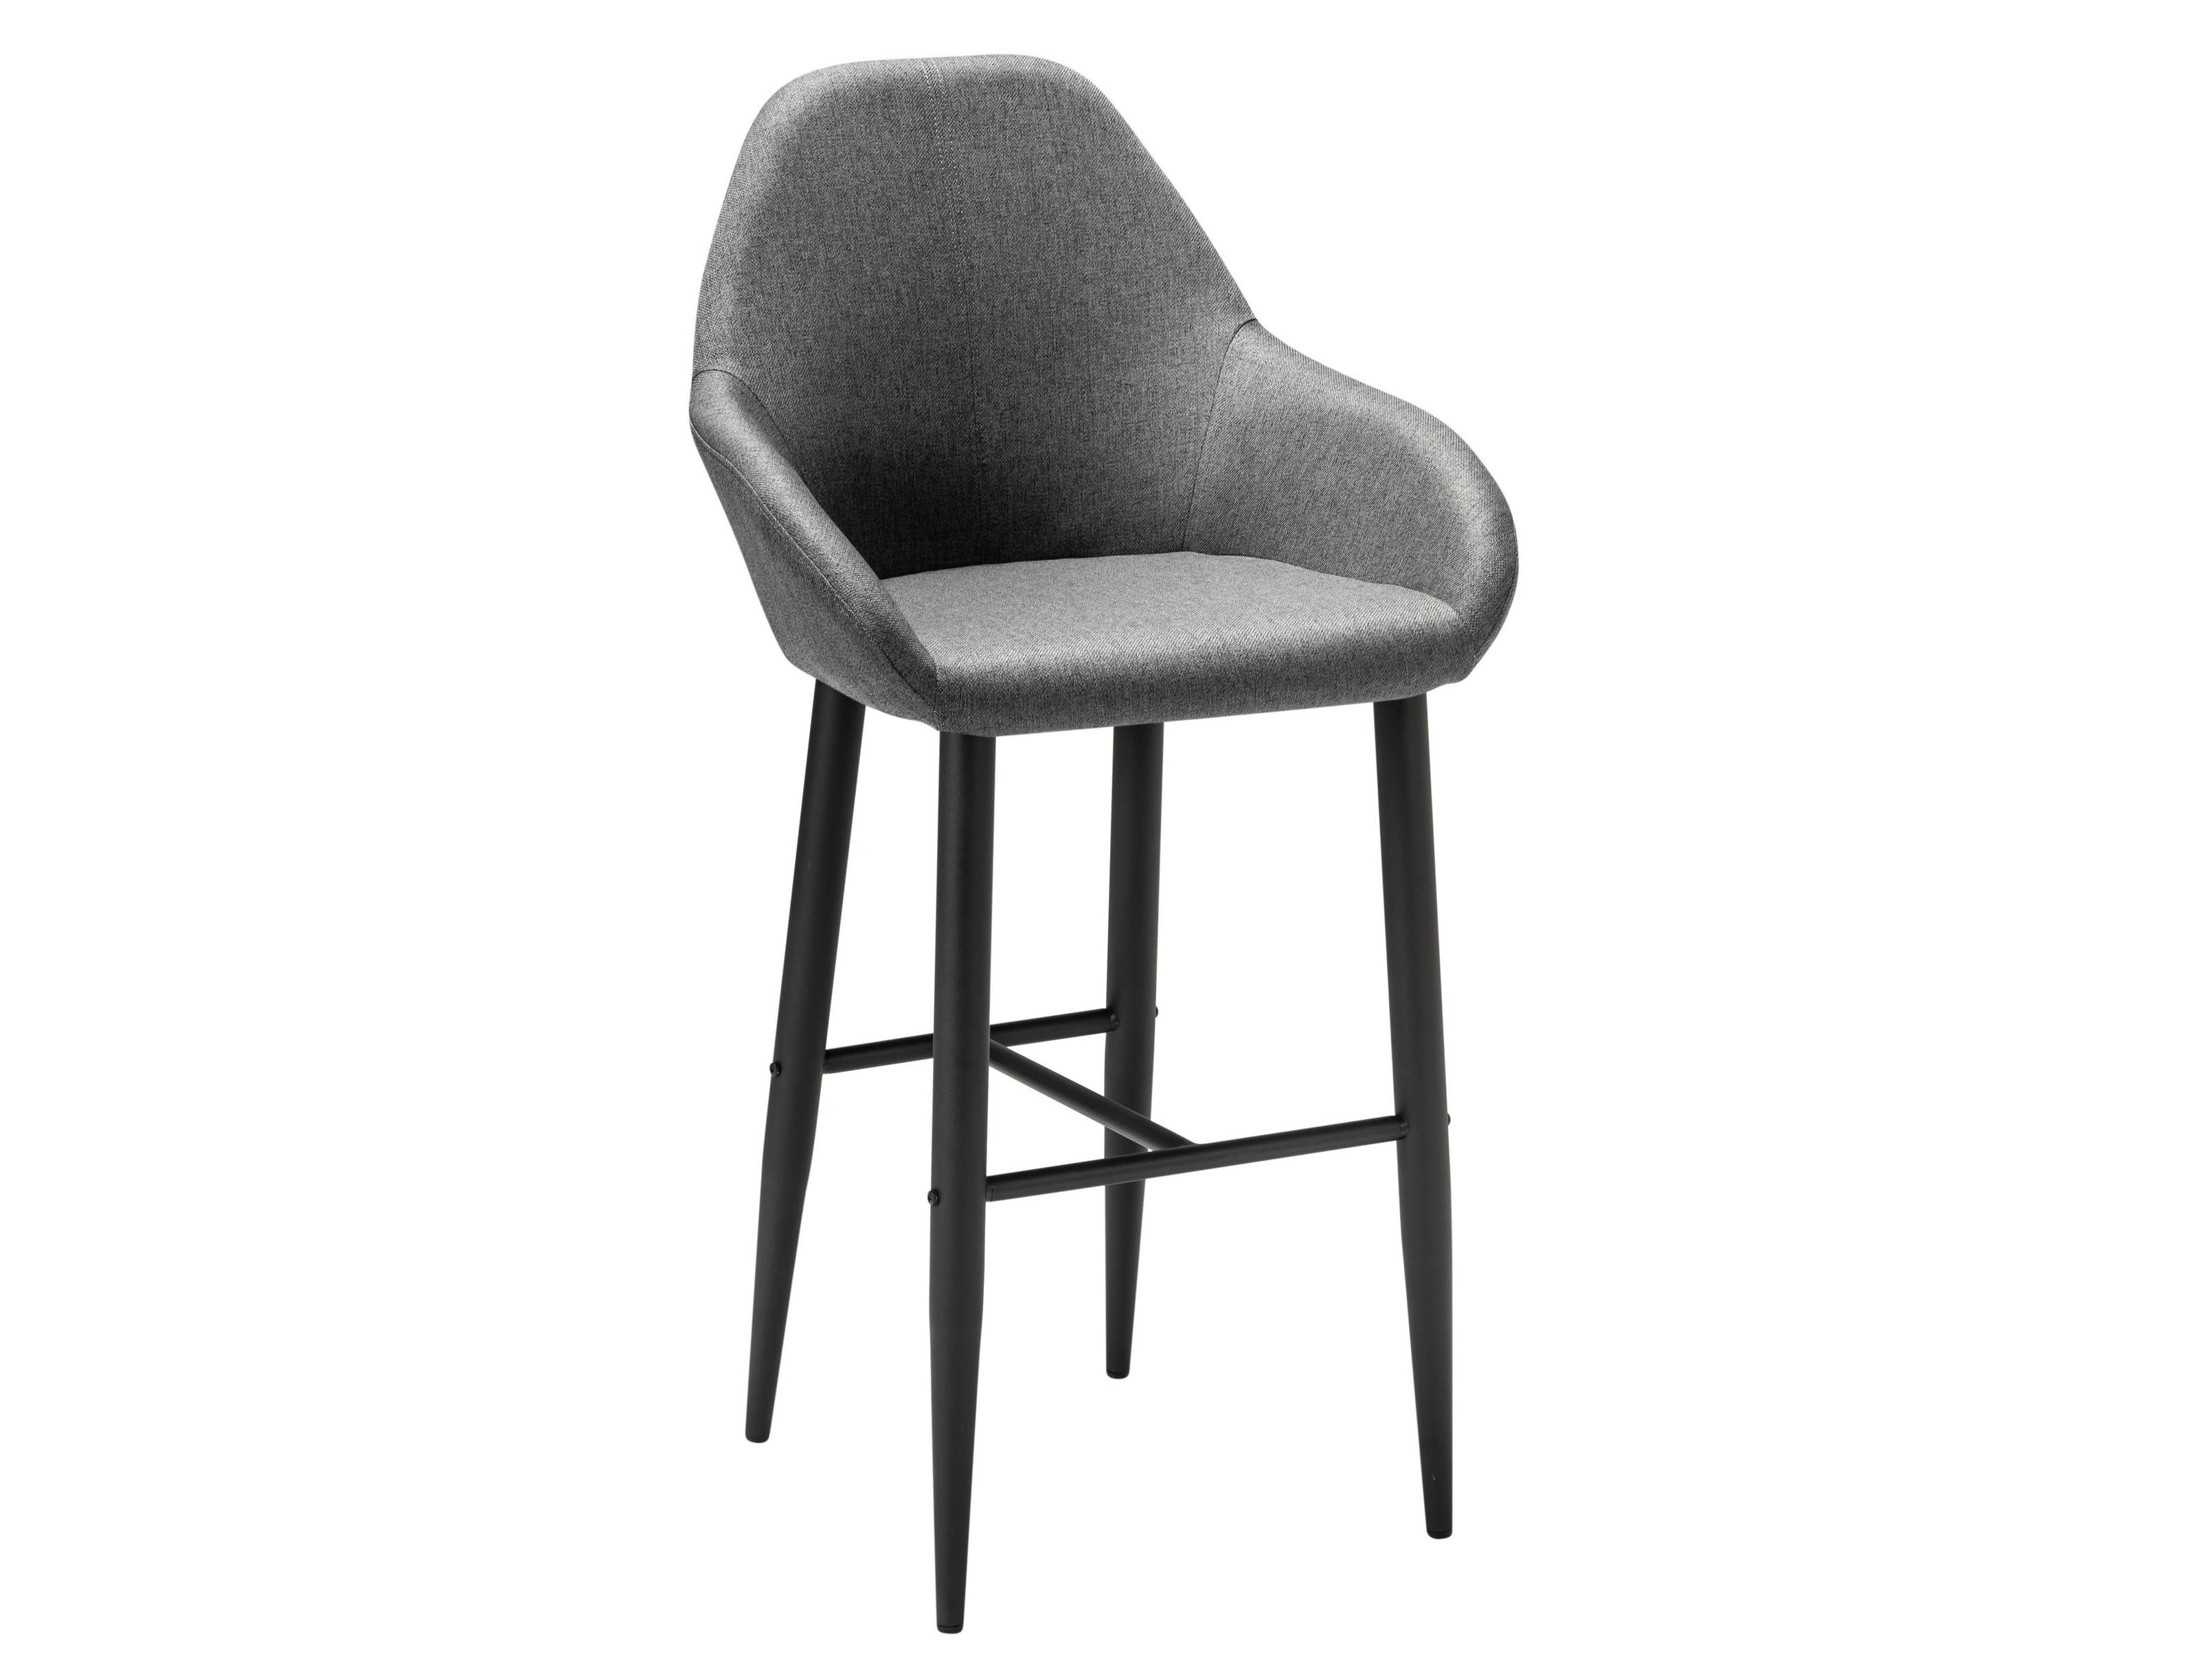 геймерское кресло everprof lotus s4 ткань серый черный Кресло Бар.Kent тёмно-серый/черный Серый, Металл